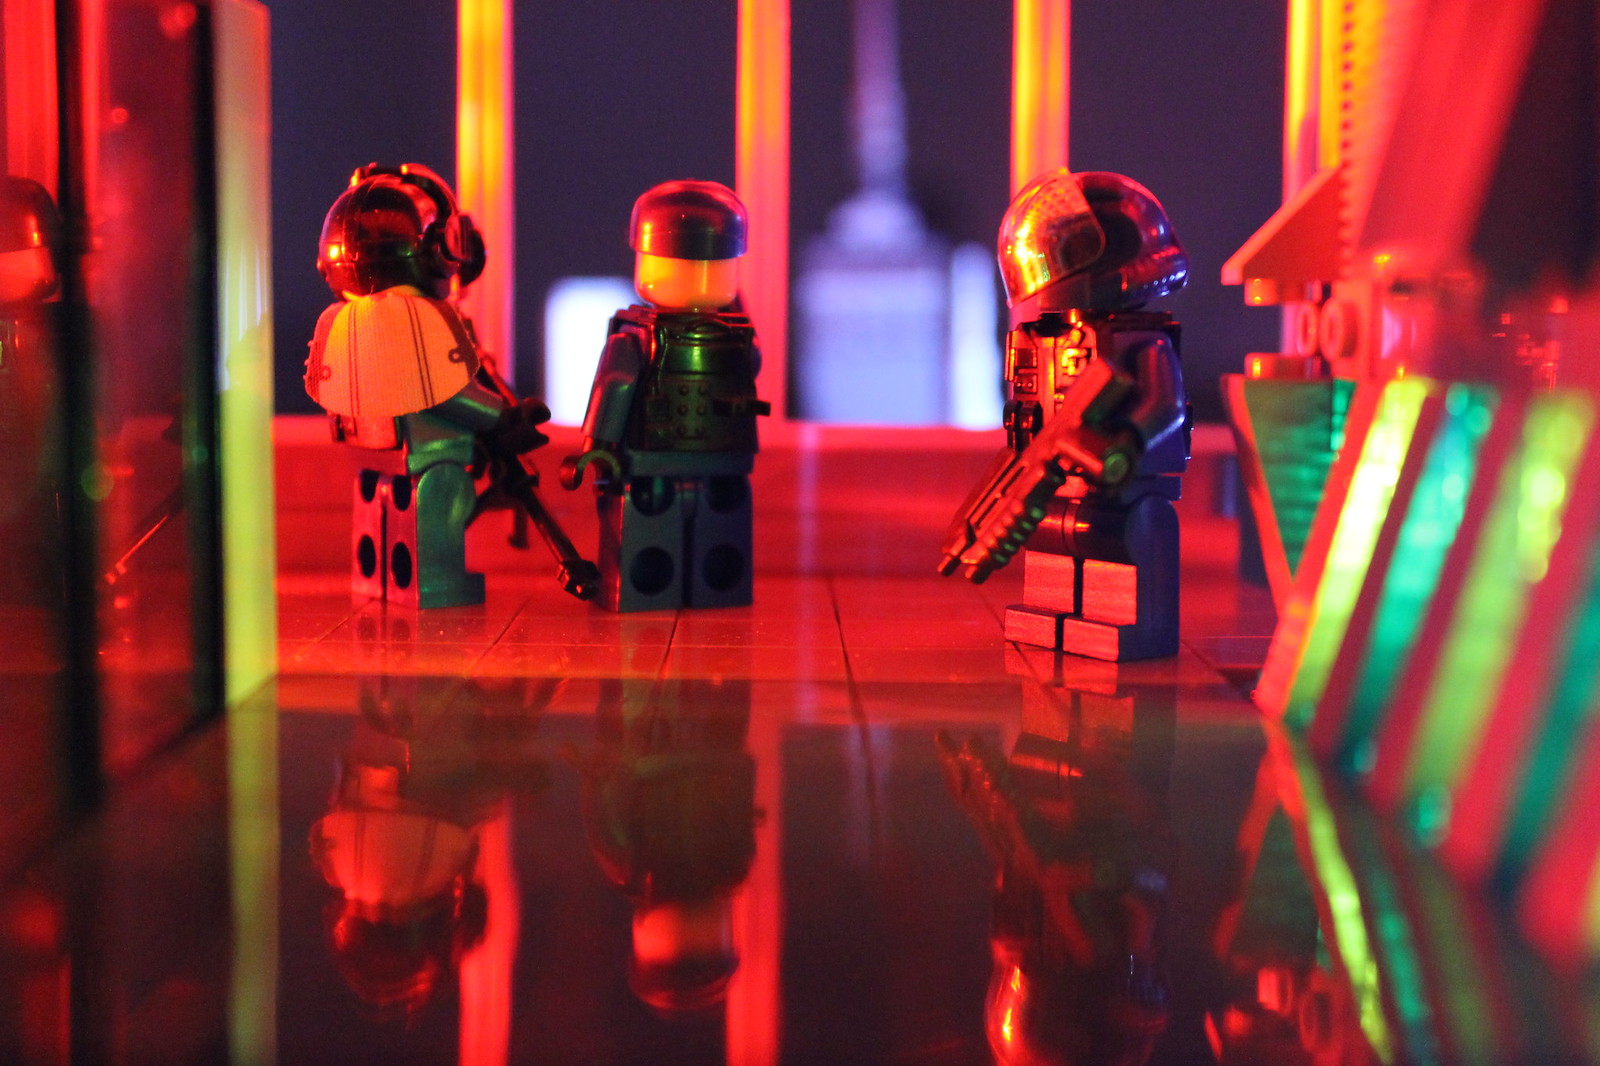 LEGO mood lighting